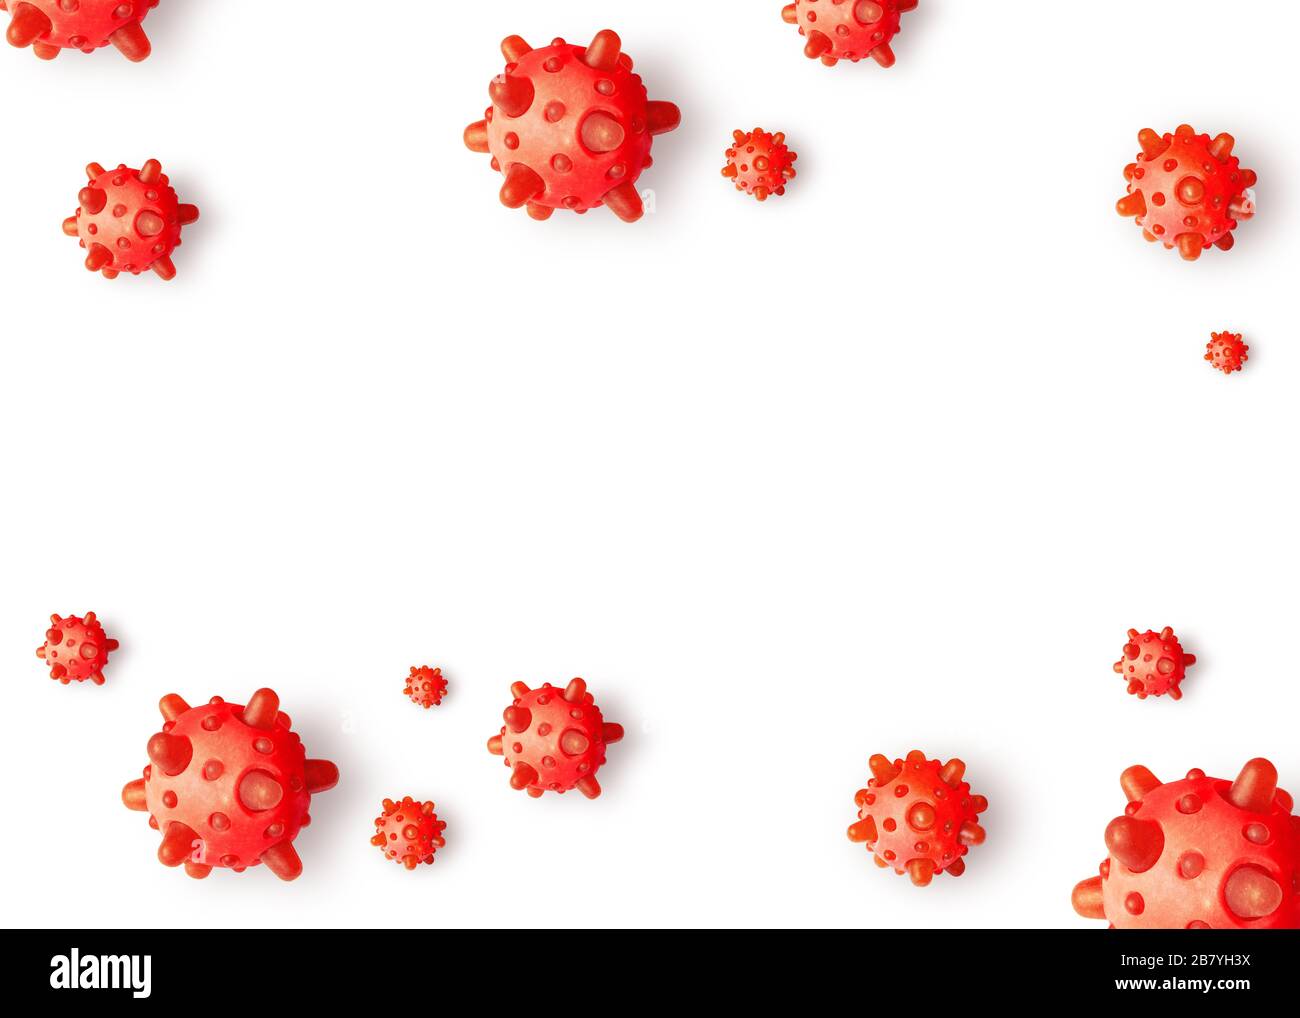 COVID-19 coronavirus sfondo bianco, illustrazione 3d. Nuova epidemia globale del virus corona SARS-cov-2. Banner con pandemia di coronavirus e COVID19 dise Foto Stock